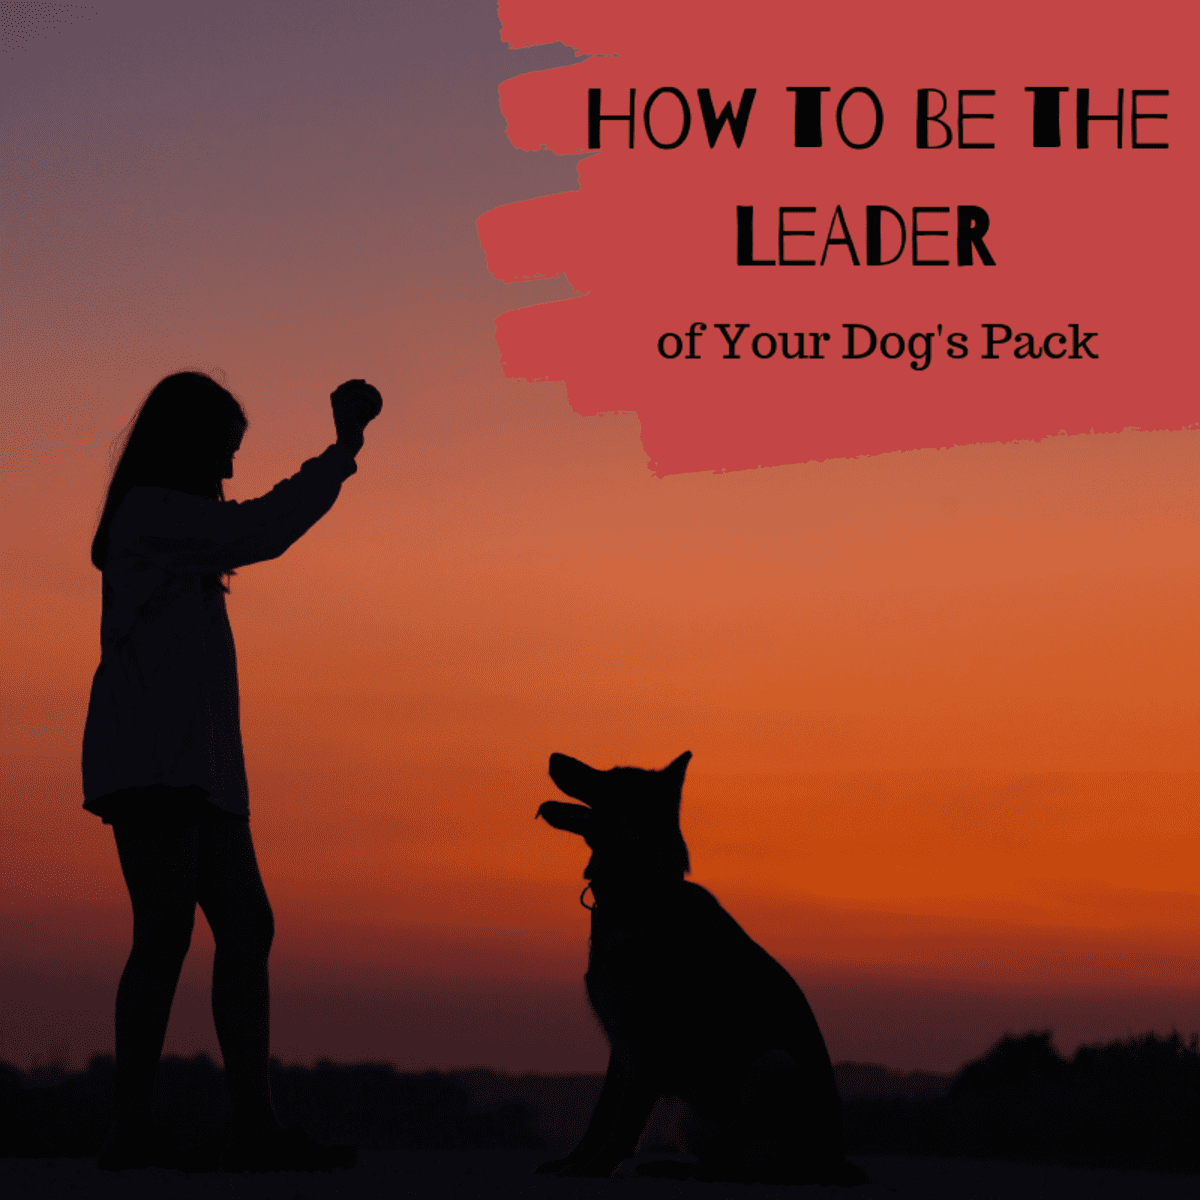 how to make dog feel better